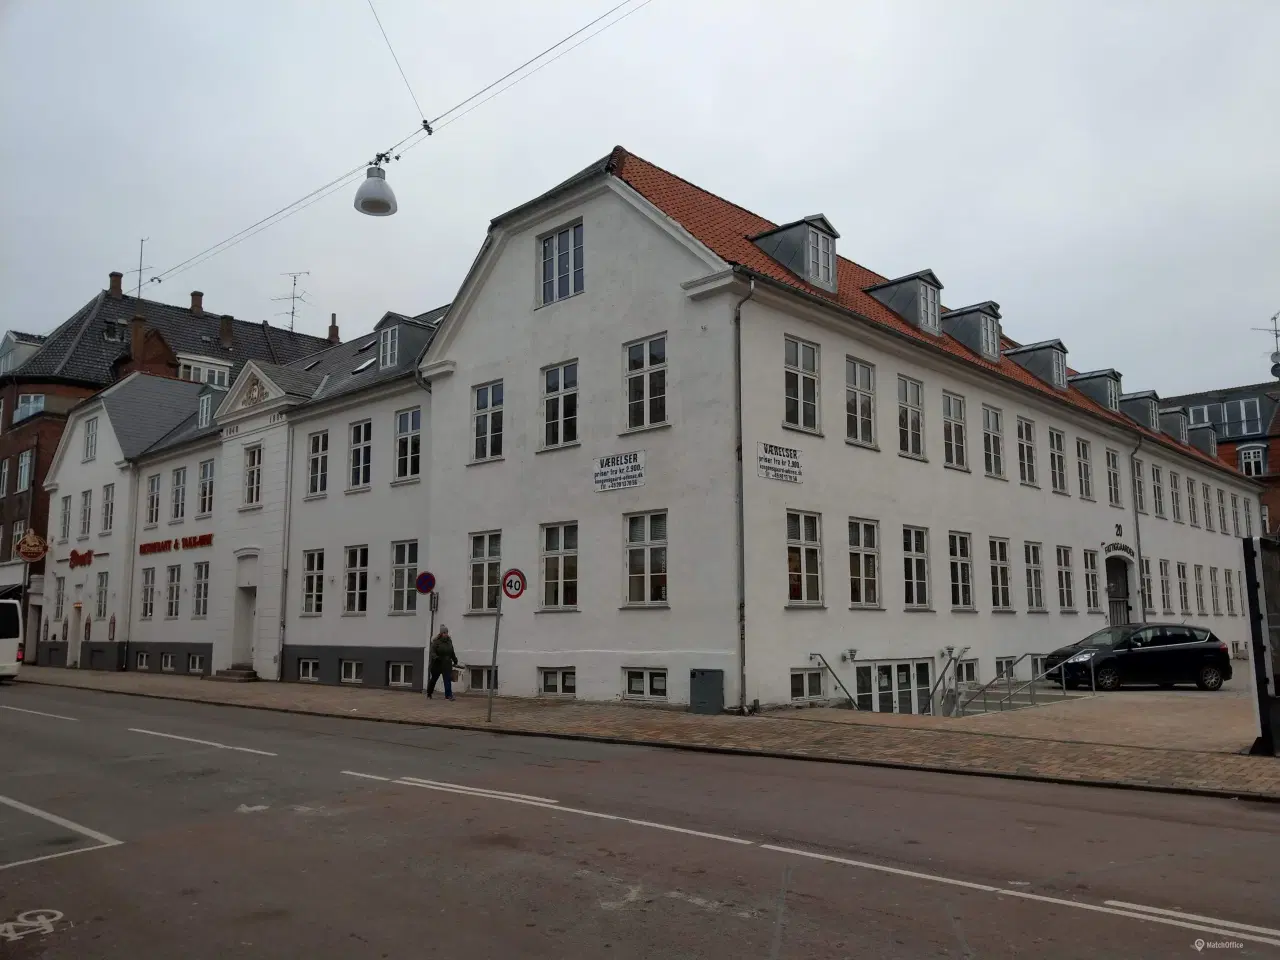 Billede 2 - Kontor/Butik / Vindegade 53, kld Odense C